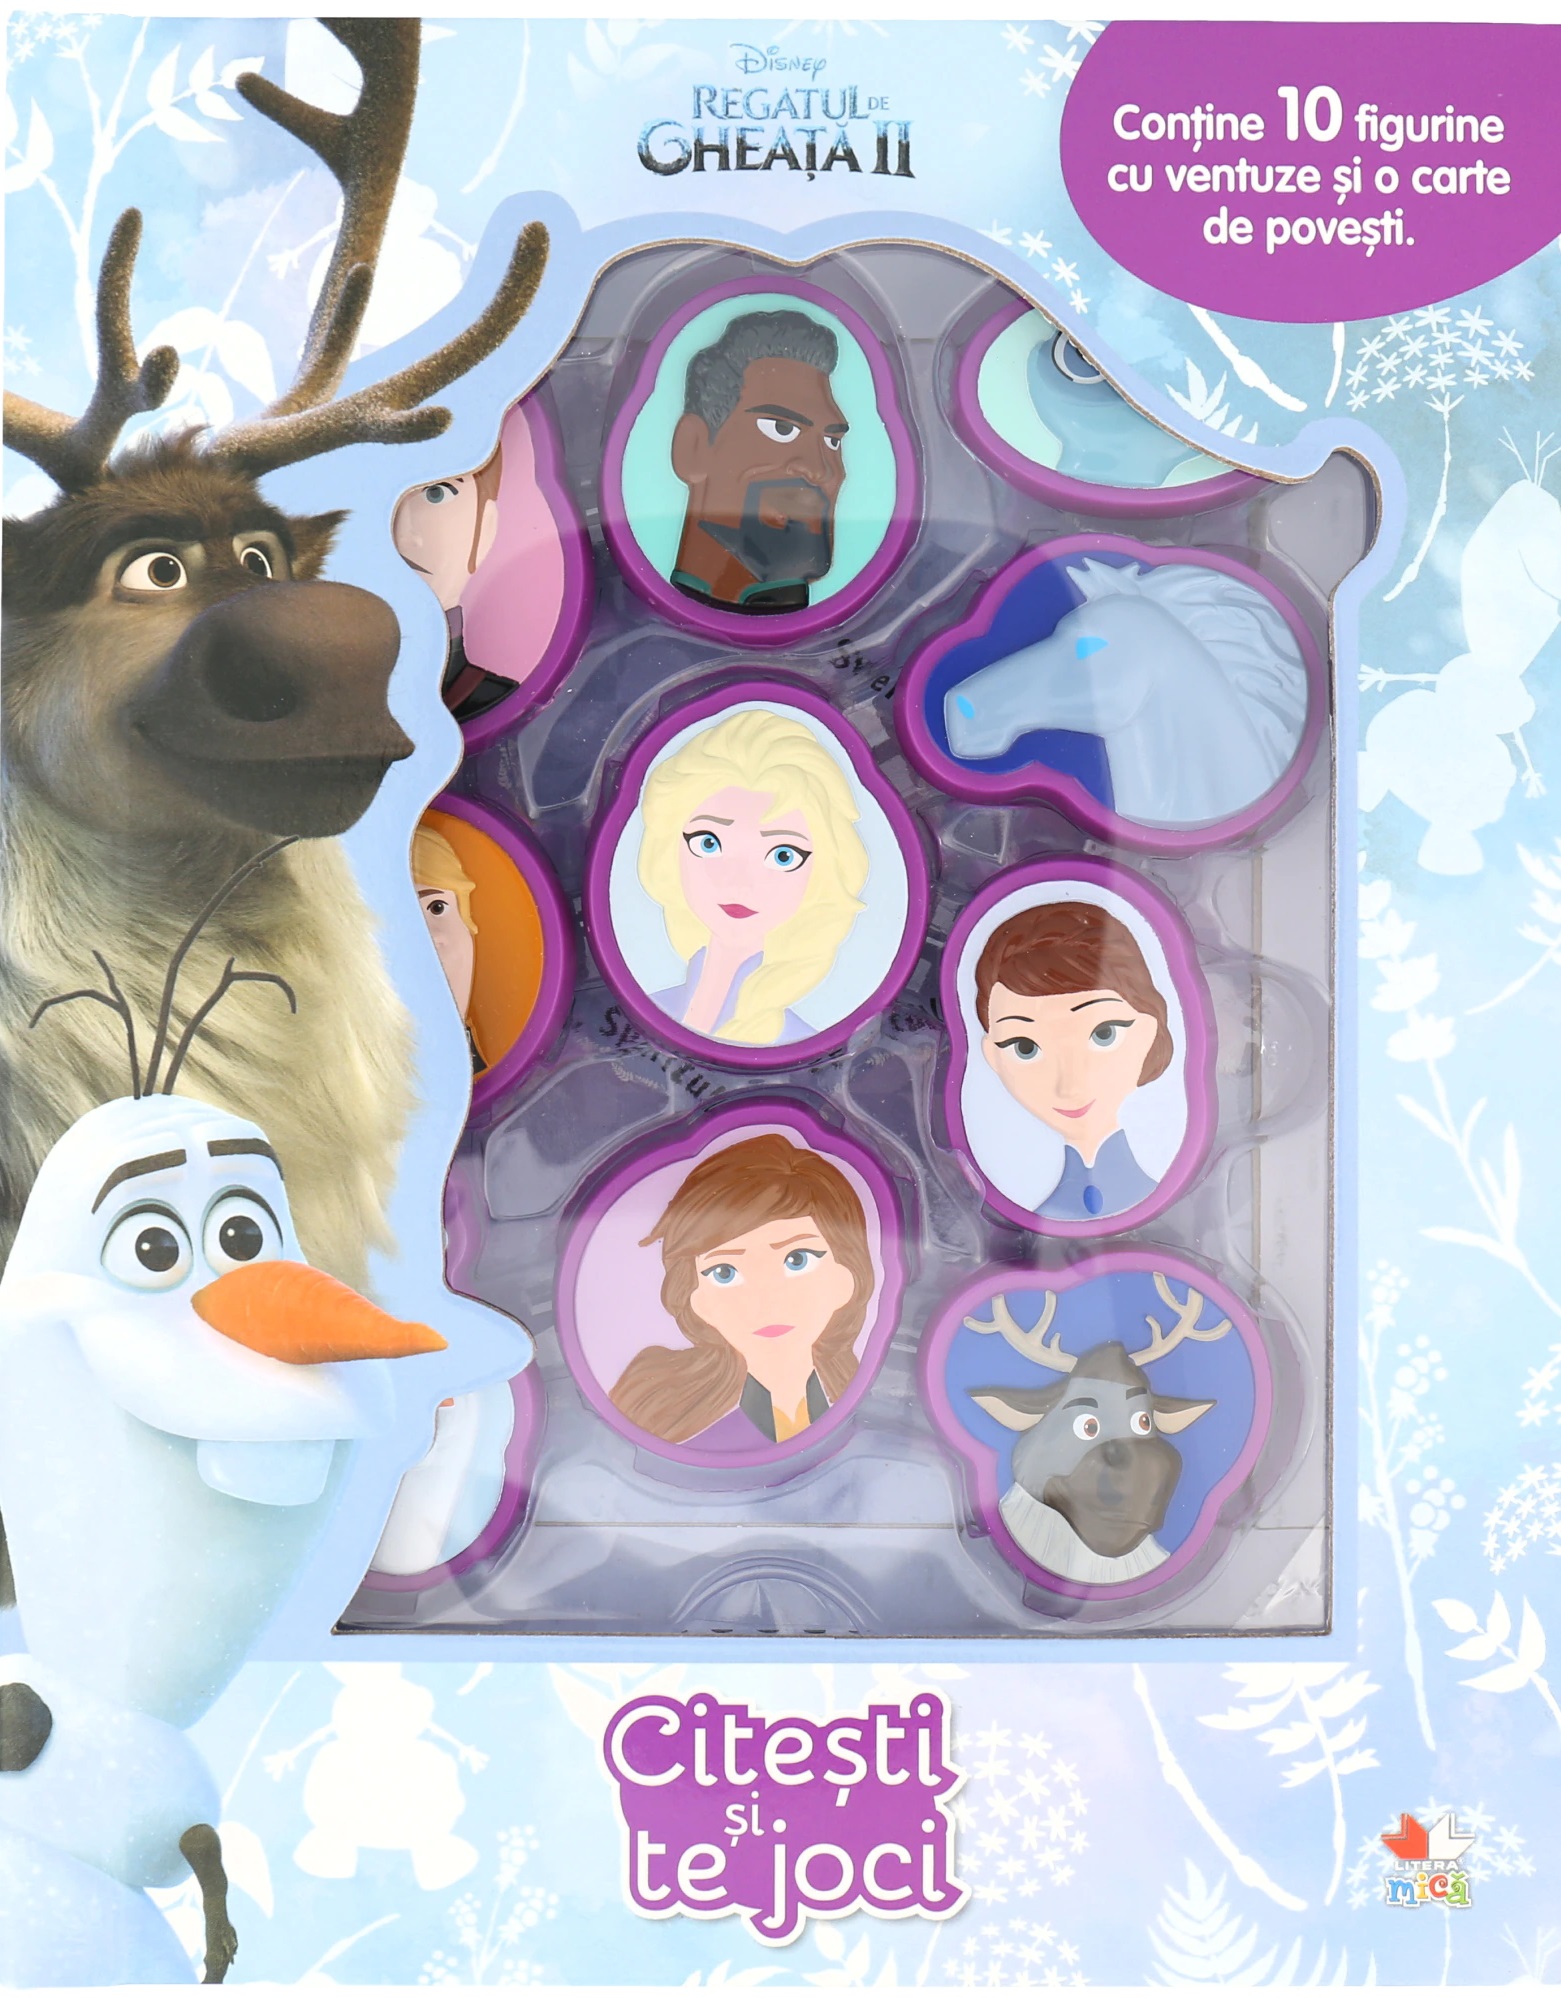 Regatul de gheata II (Frozen II). Citesti si te joci | Disney carturesti.ro poza bestsellers.ro